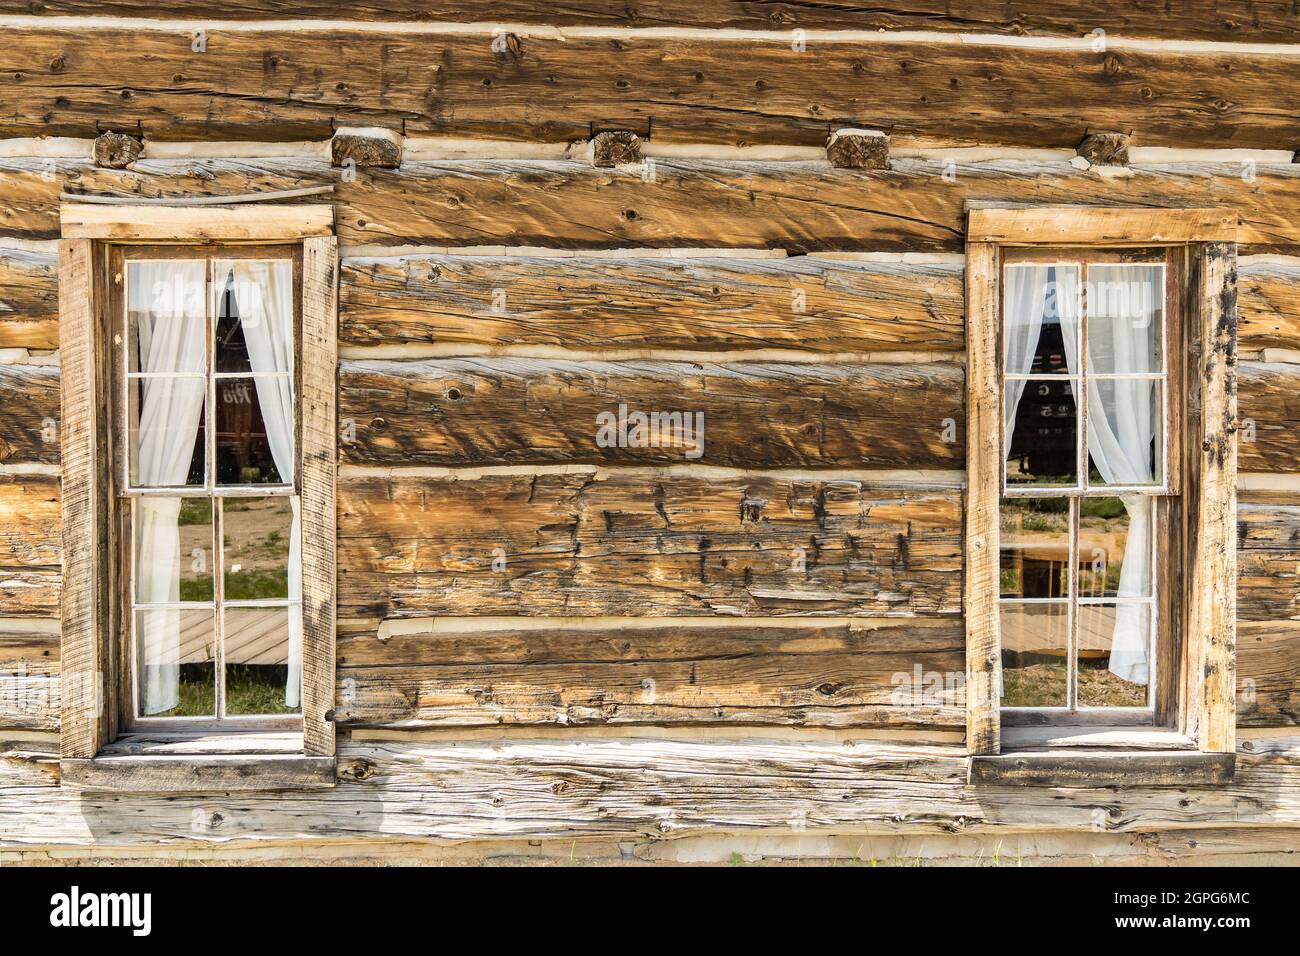 Ambesonne Cortinas rústicas de cocina, puerta de granero de madera vieja  con artículos de naturaleza en el techo, pueblo, ciudad, vida rural